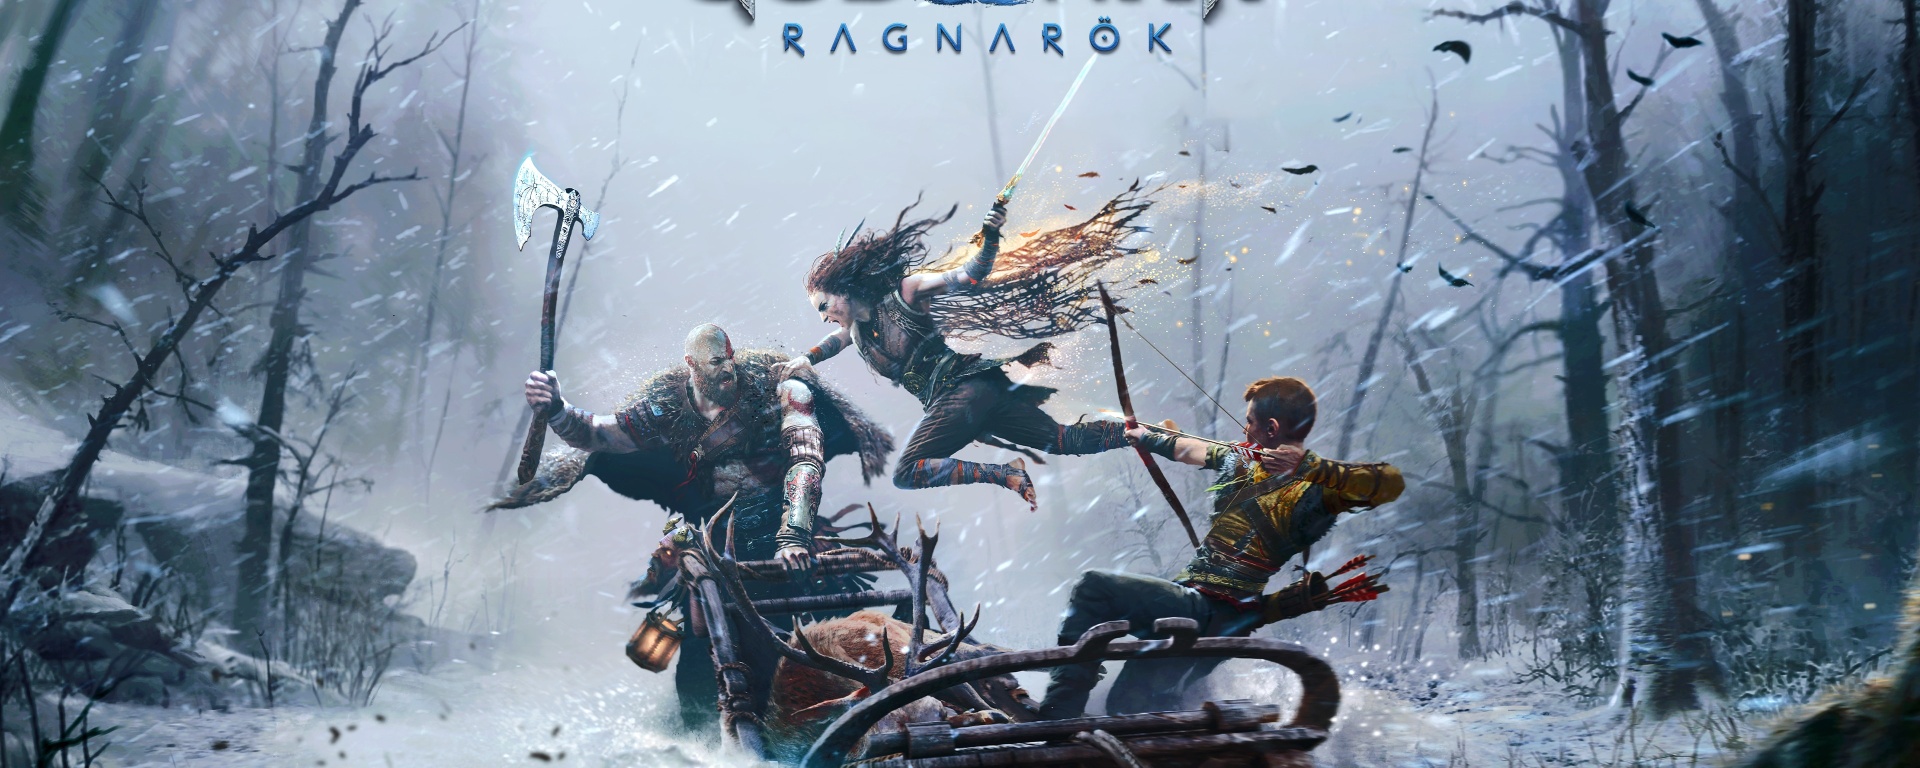 God of War: Ragnarok alcança 5,1 milhões em vendas na primeira